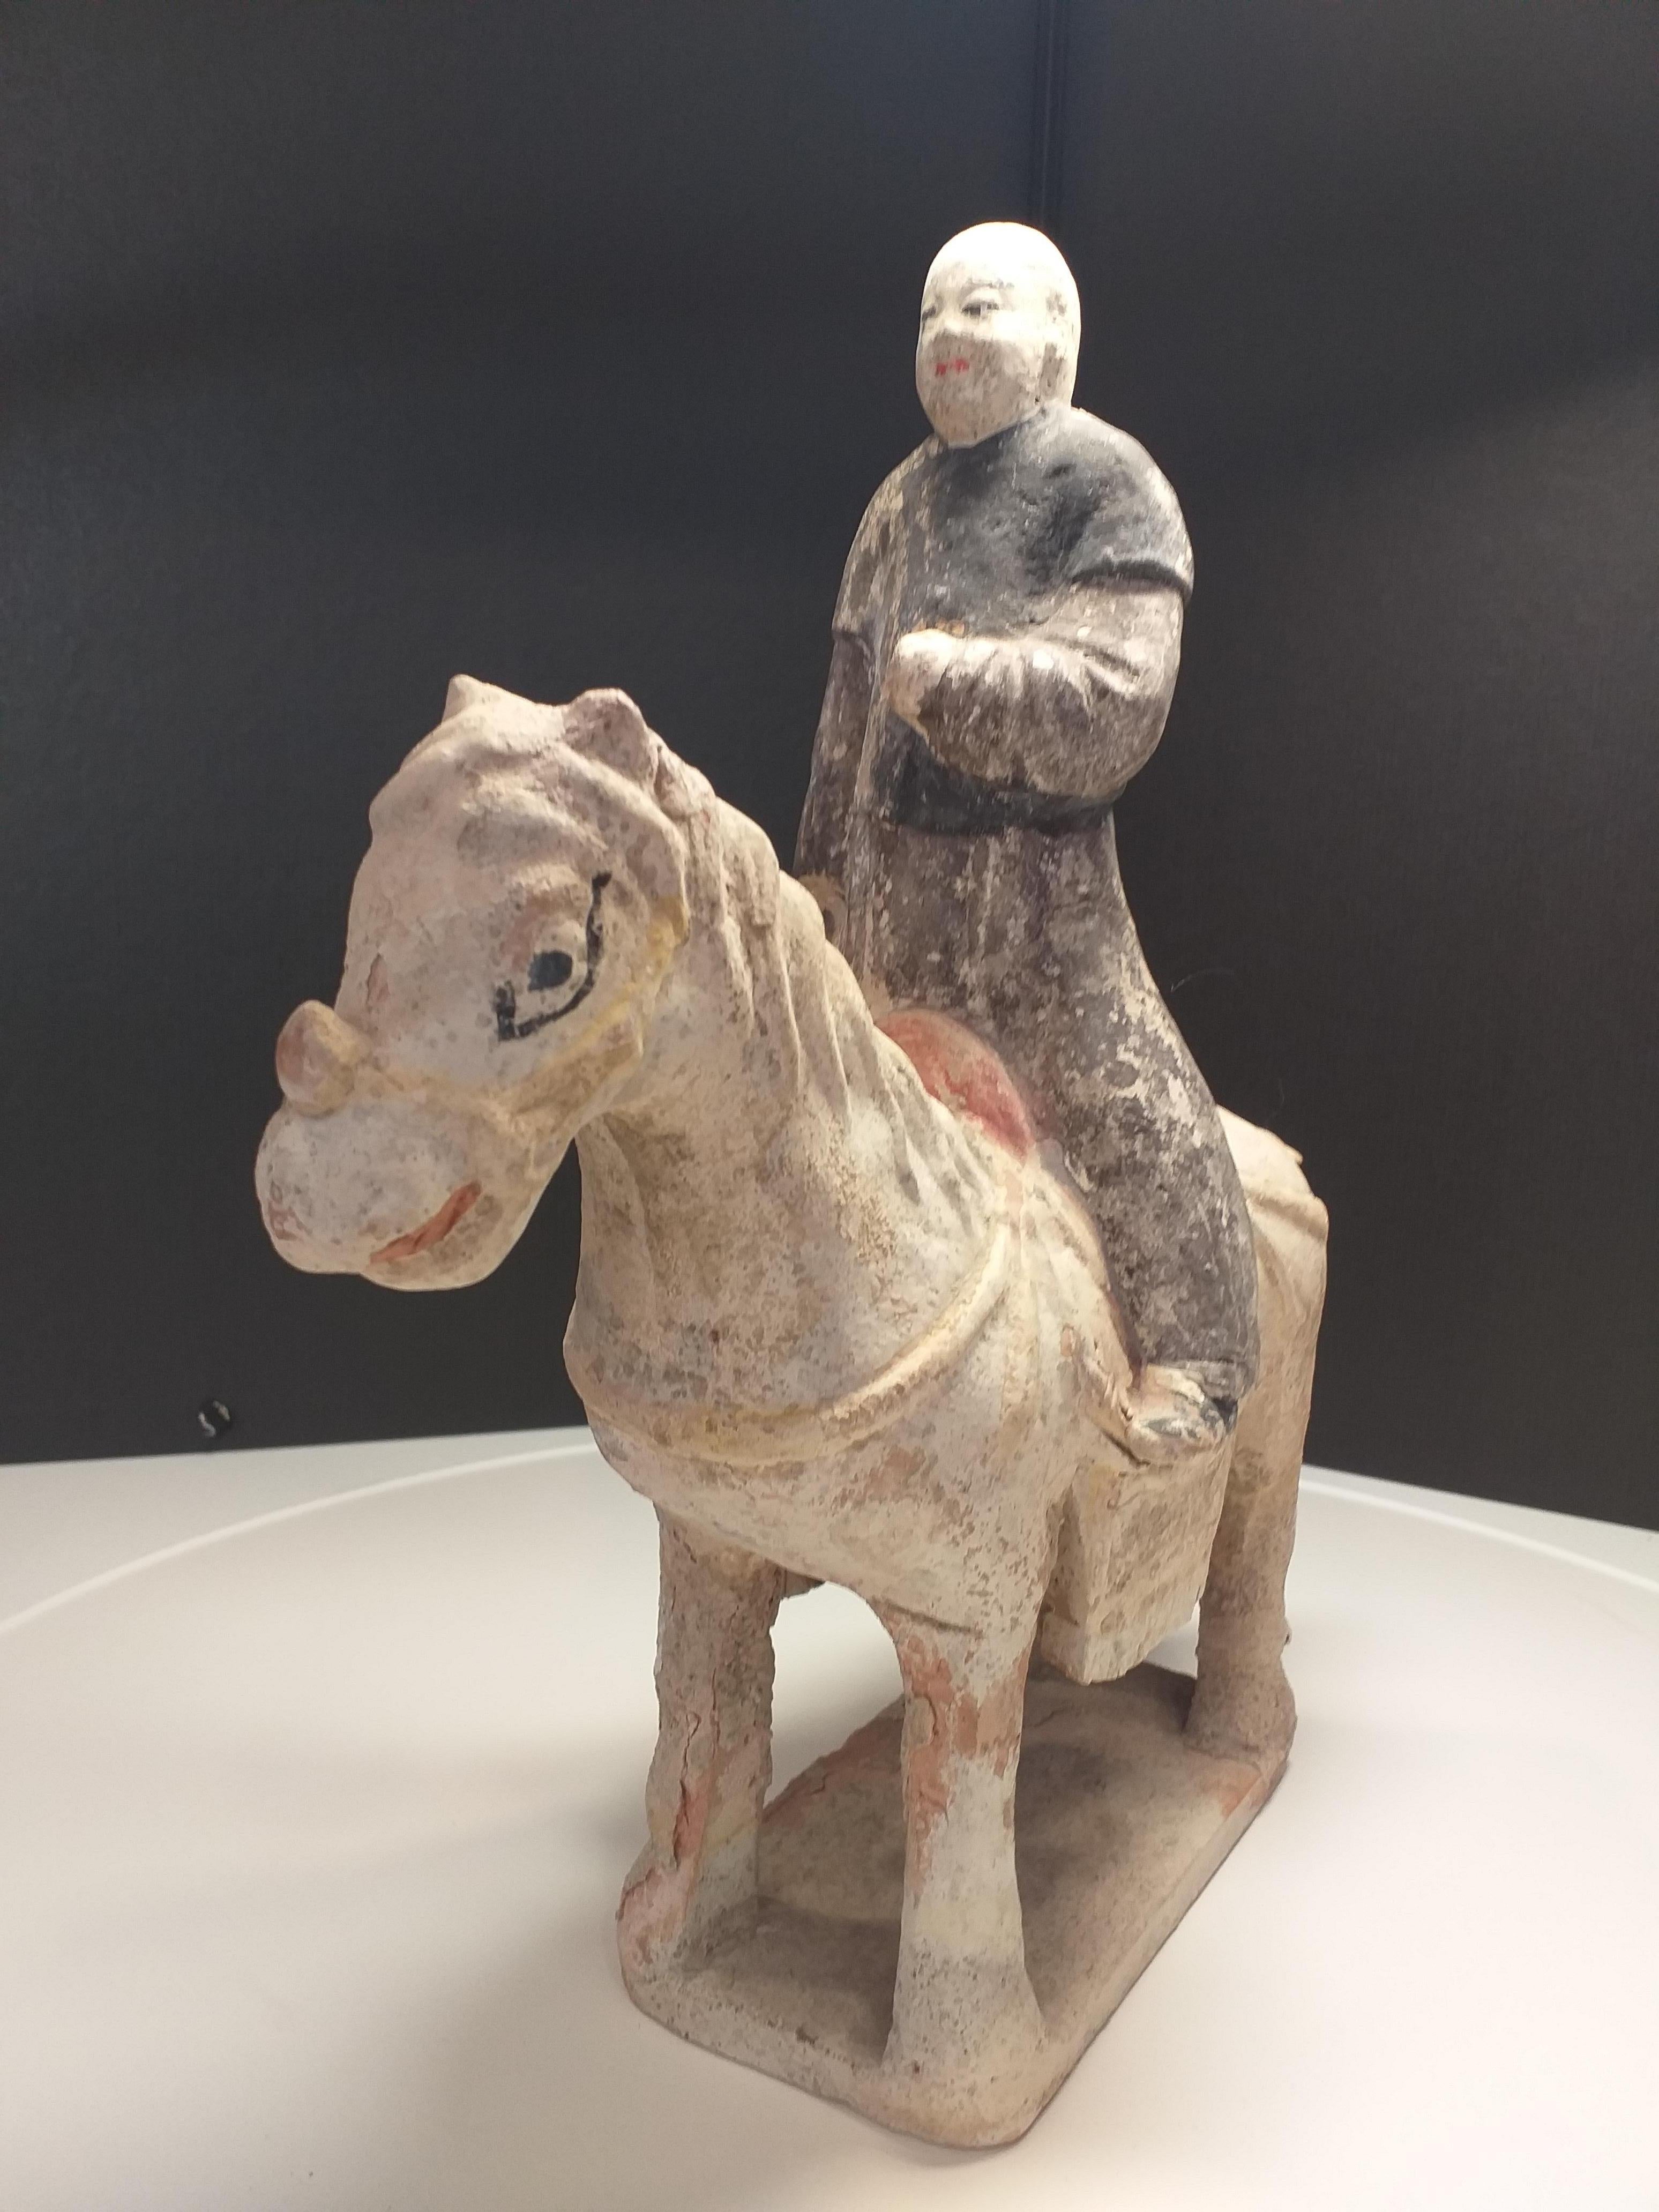 Rider. 
Polychrome terracotta. 
Ming period.
H 30cm. L 27cm. W 11cm.
1200€.